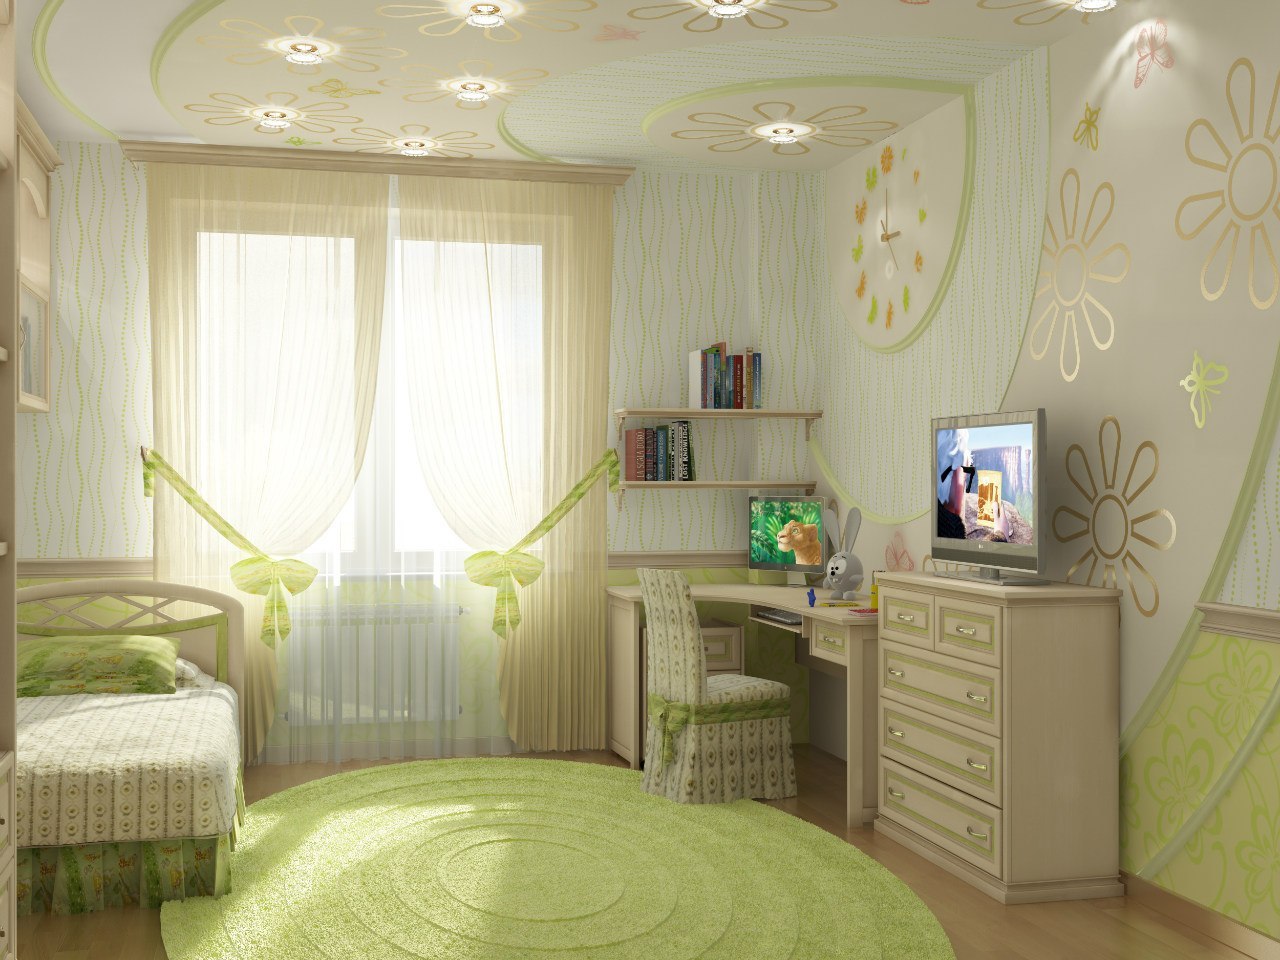 Progettazione fotografica di una camera per bambini in colori vivaci